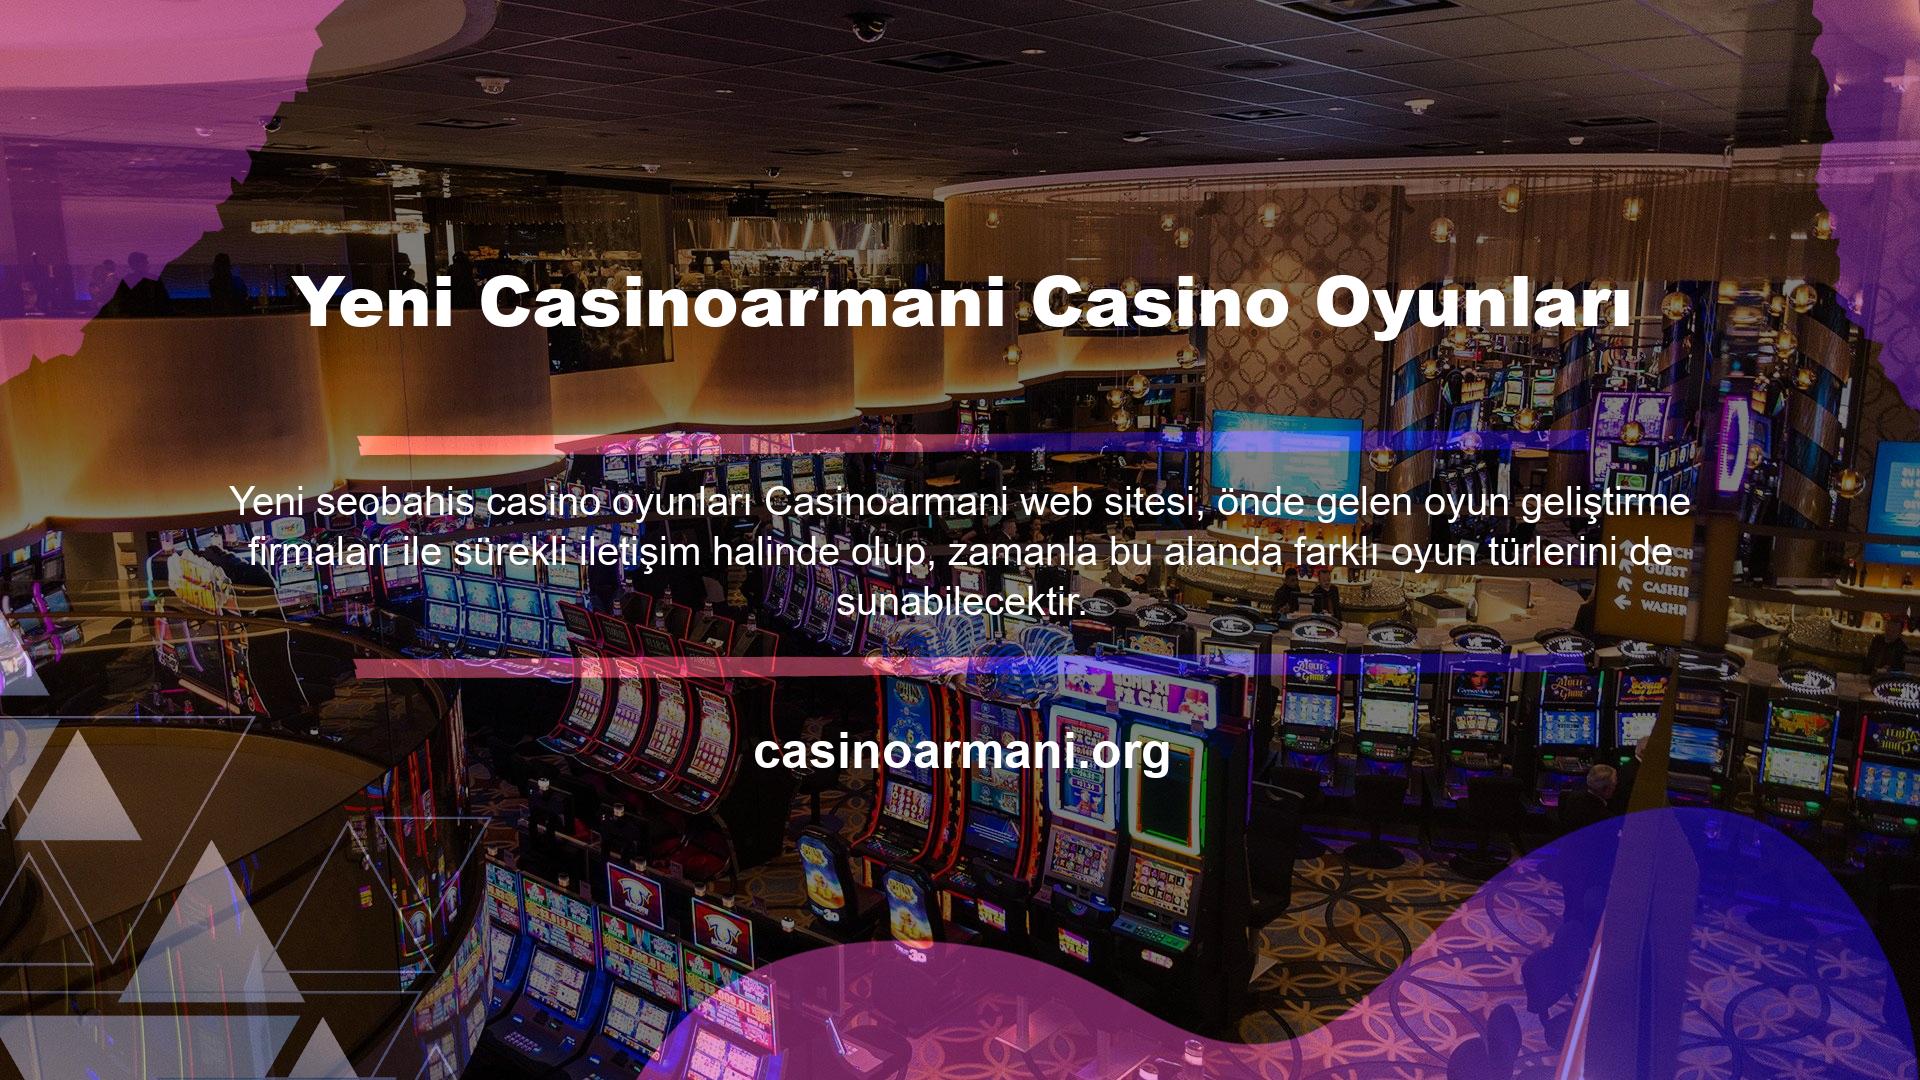 Bu bağlamda Yeni Casinoarmani Casino Oyunları çeşitli sosyal kanalları kullanarak sürekli duyurular yapabilir